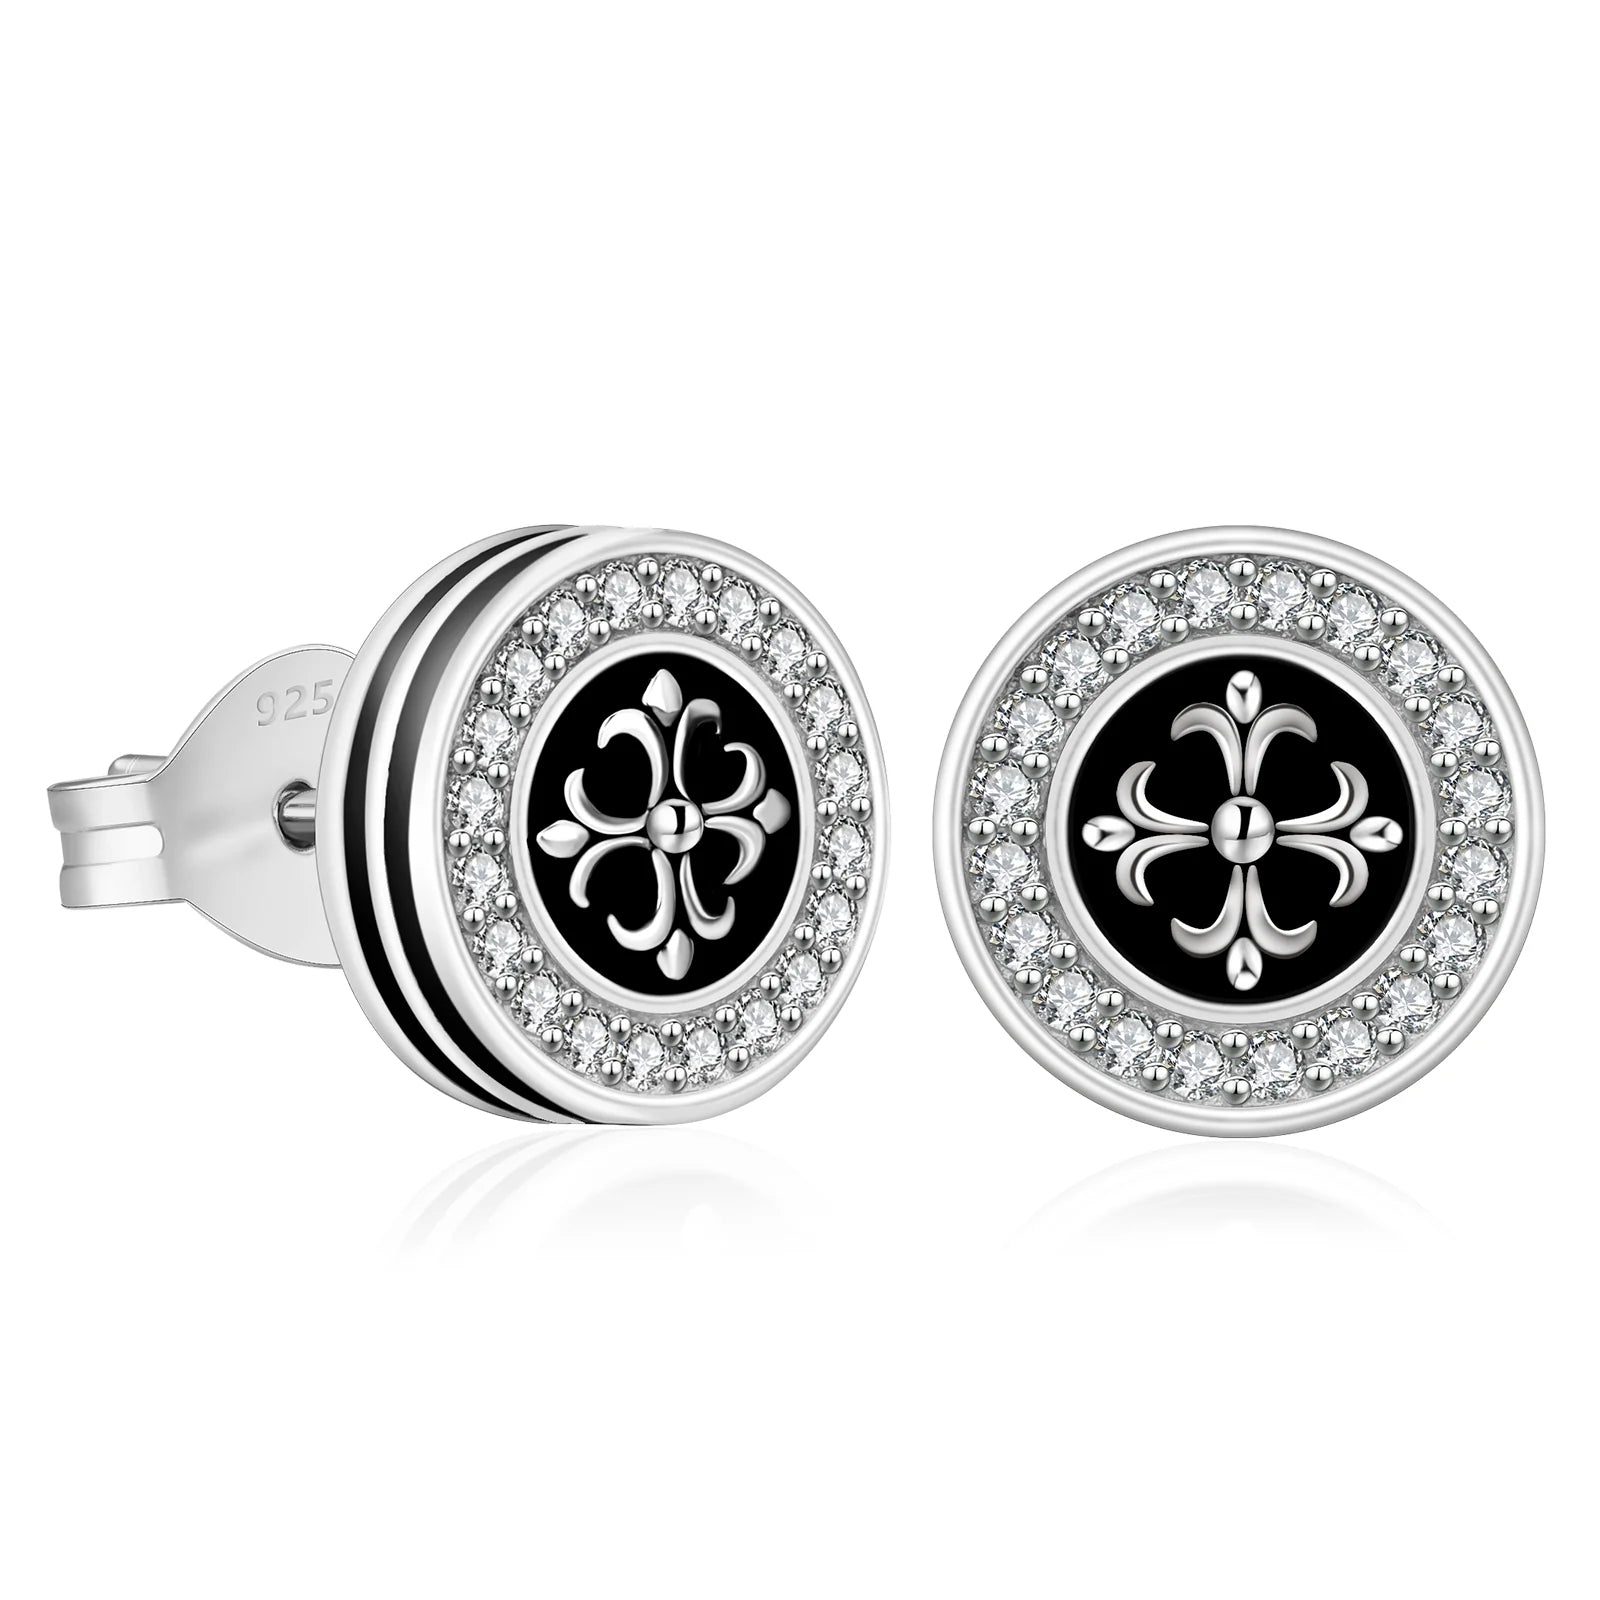 9mm Black Iced Diamond Stud Earrings - Cross Fleur-de-lis Lily flower Earrings 